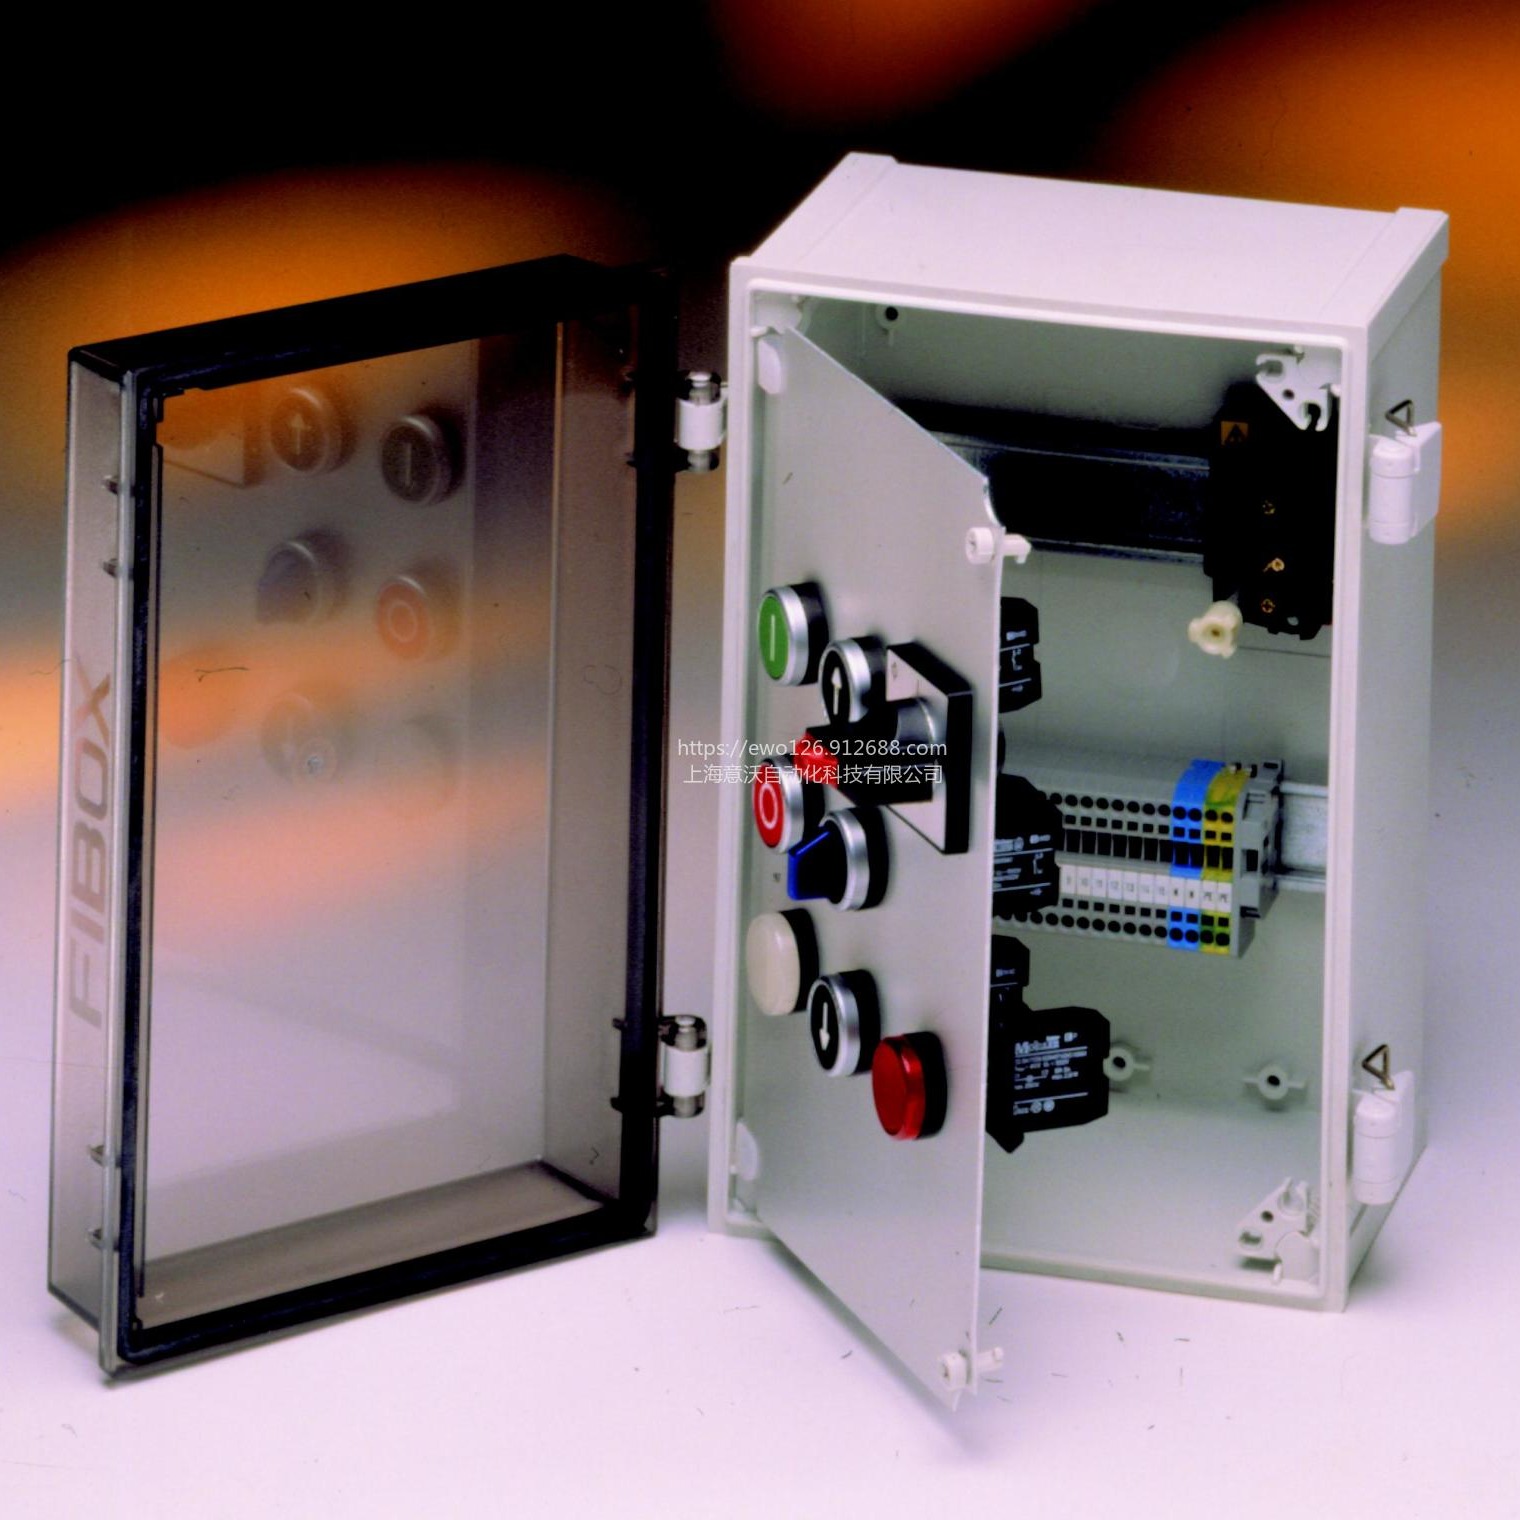 户外透明聚碳酸酯塑料配电箱 工控便携接线箱 FIBOX CAB PC/ABS壁挂式电气密封箱 铰链搭扣型图片